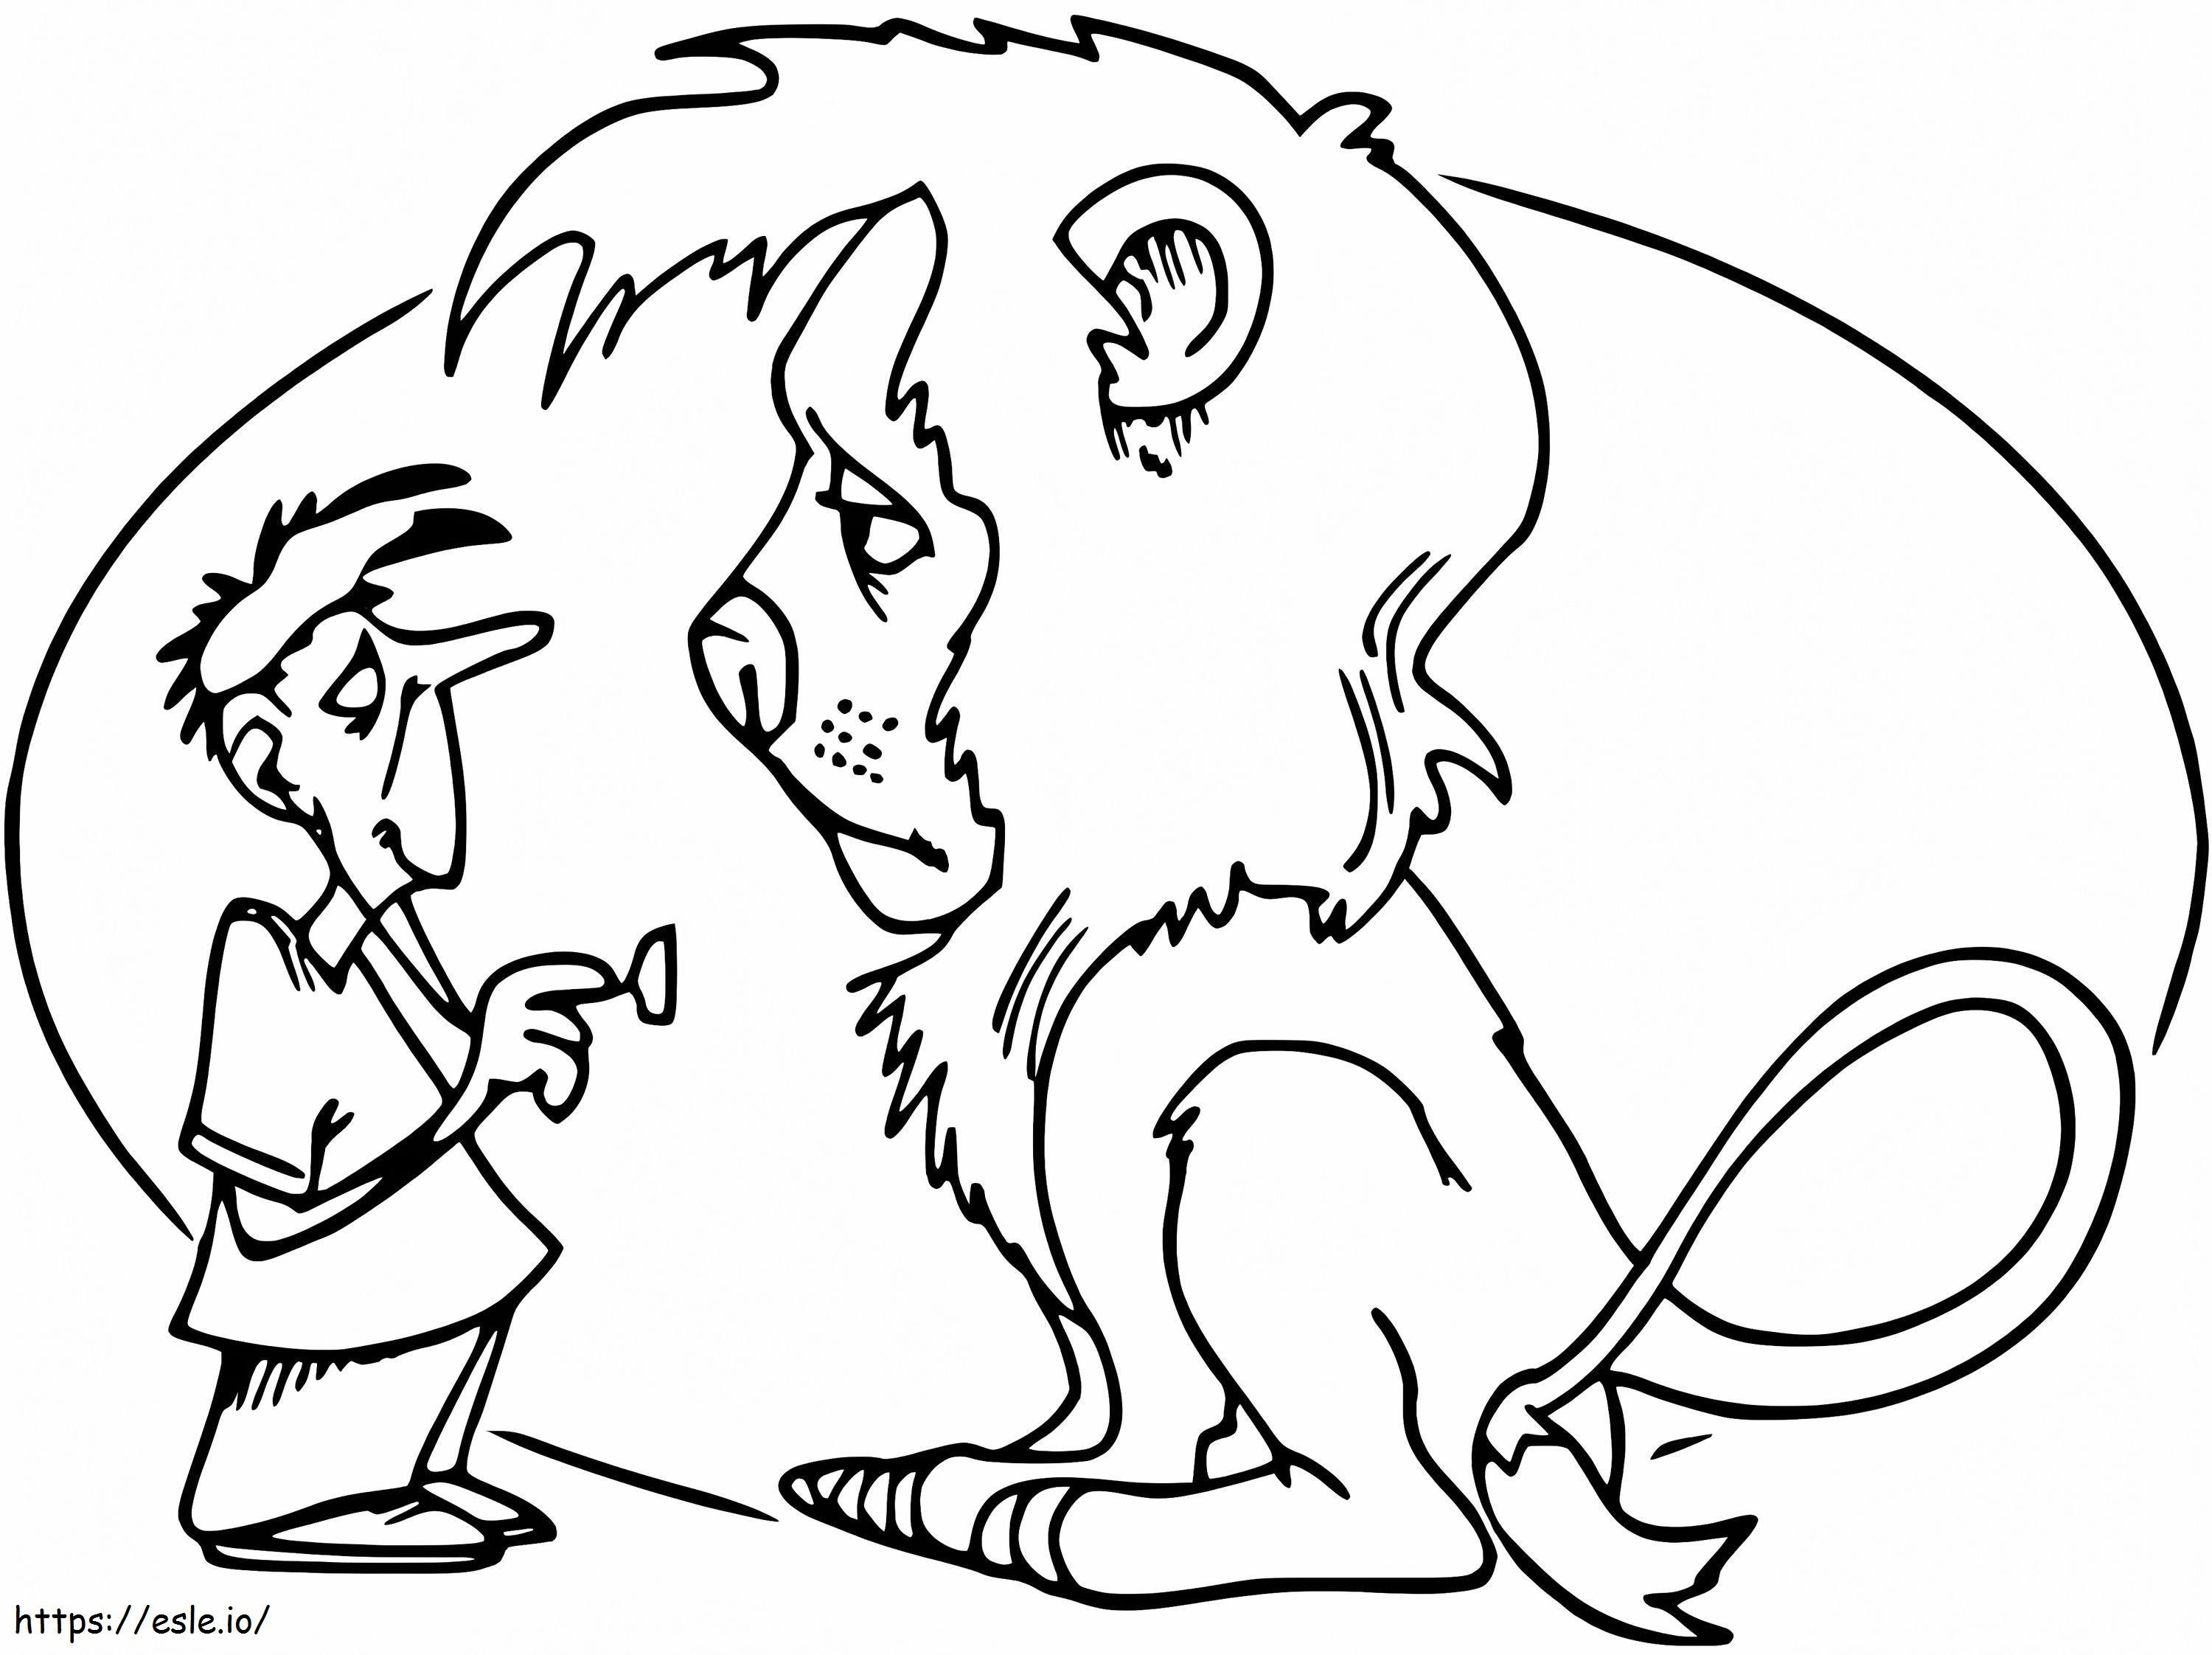 Tierarzt und trauriger Löwe ausmalbilder